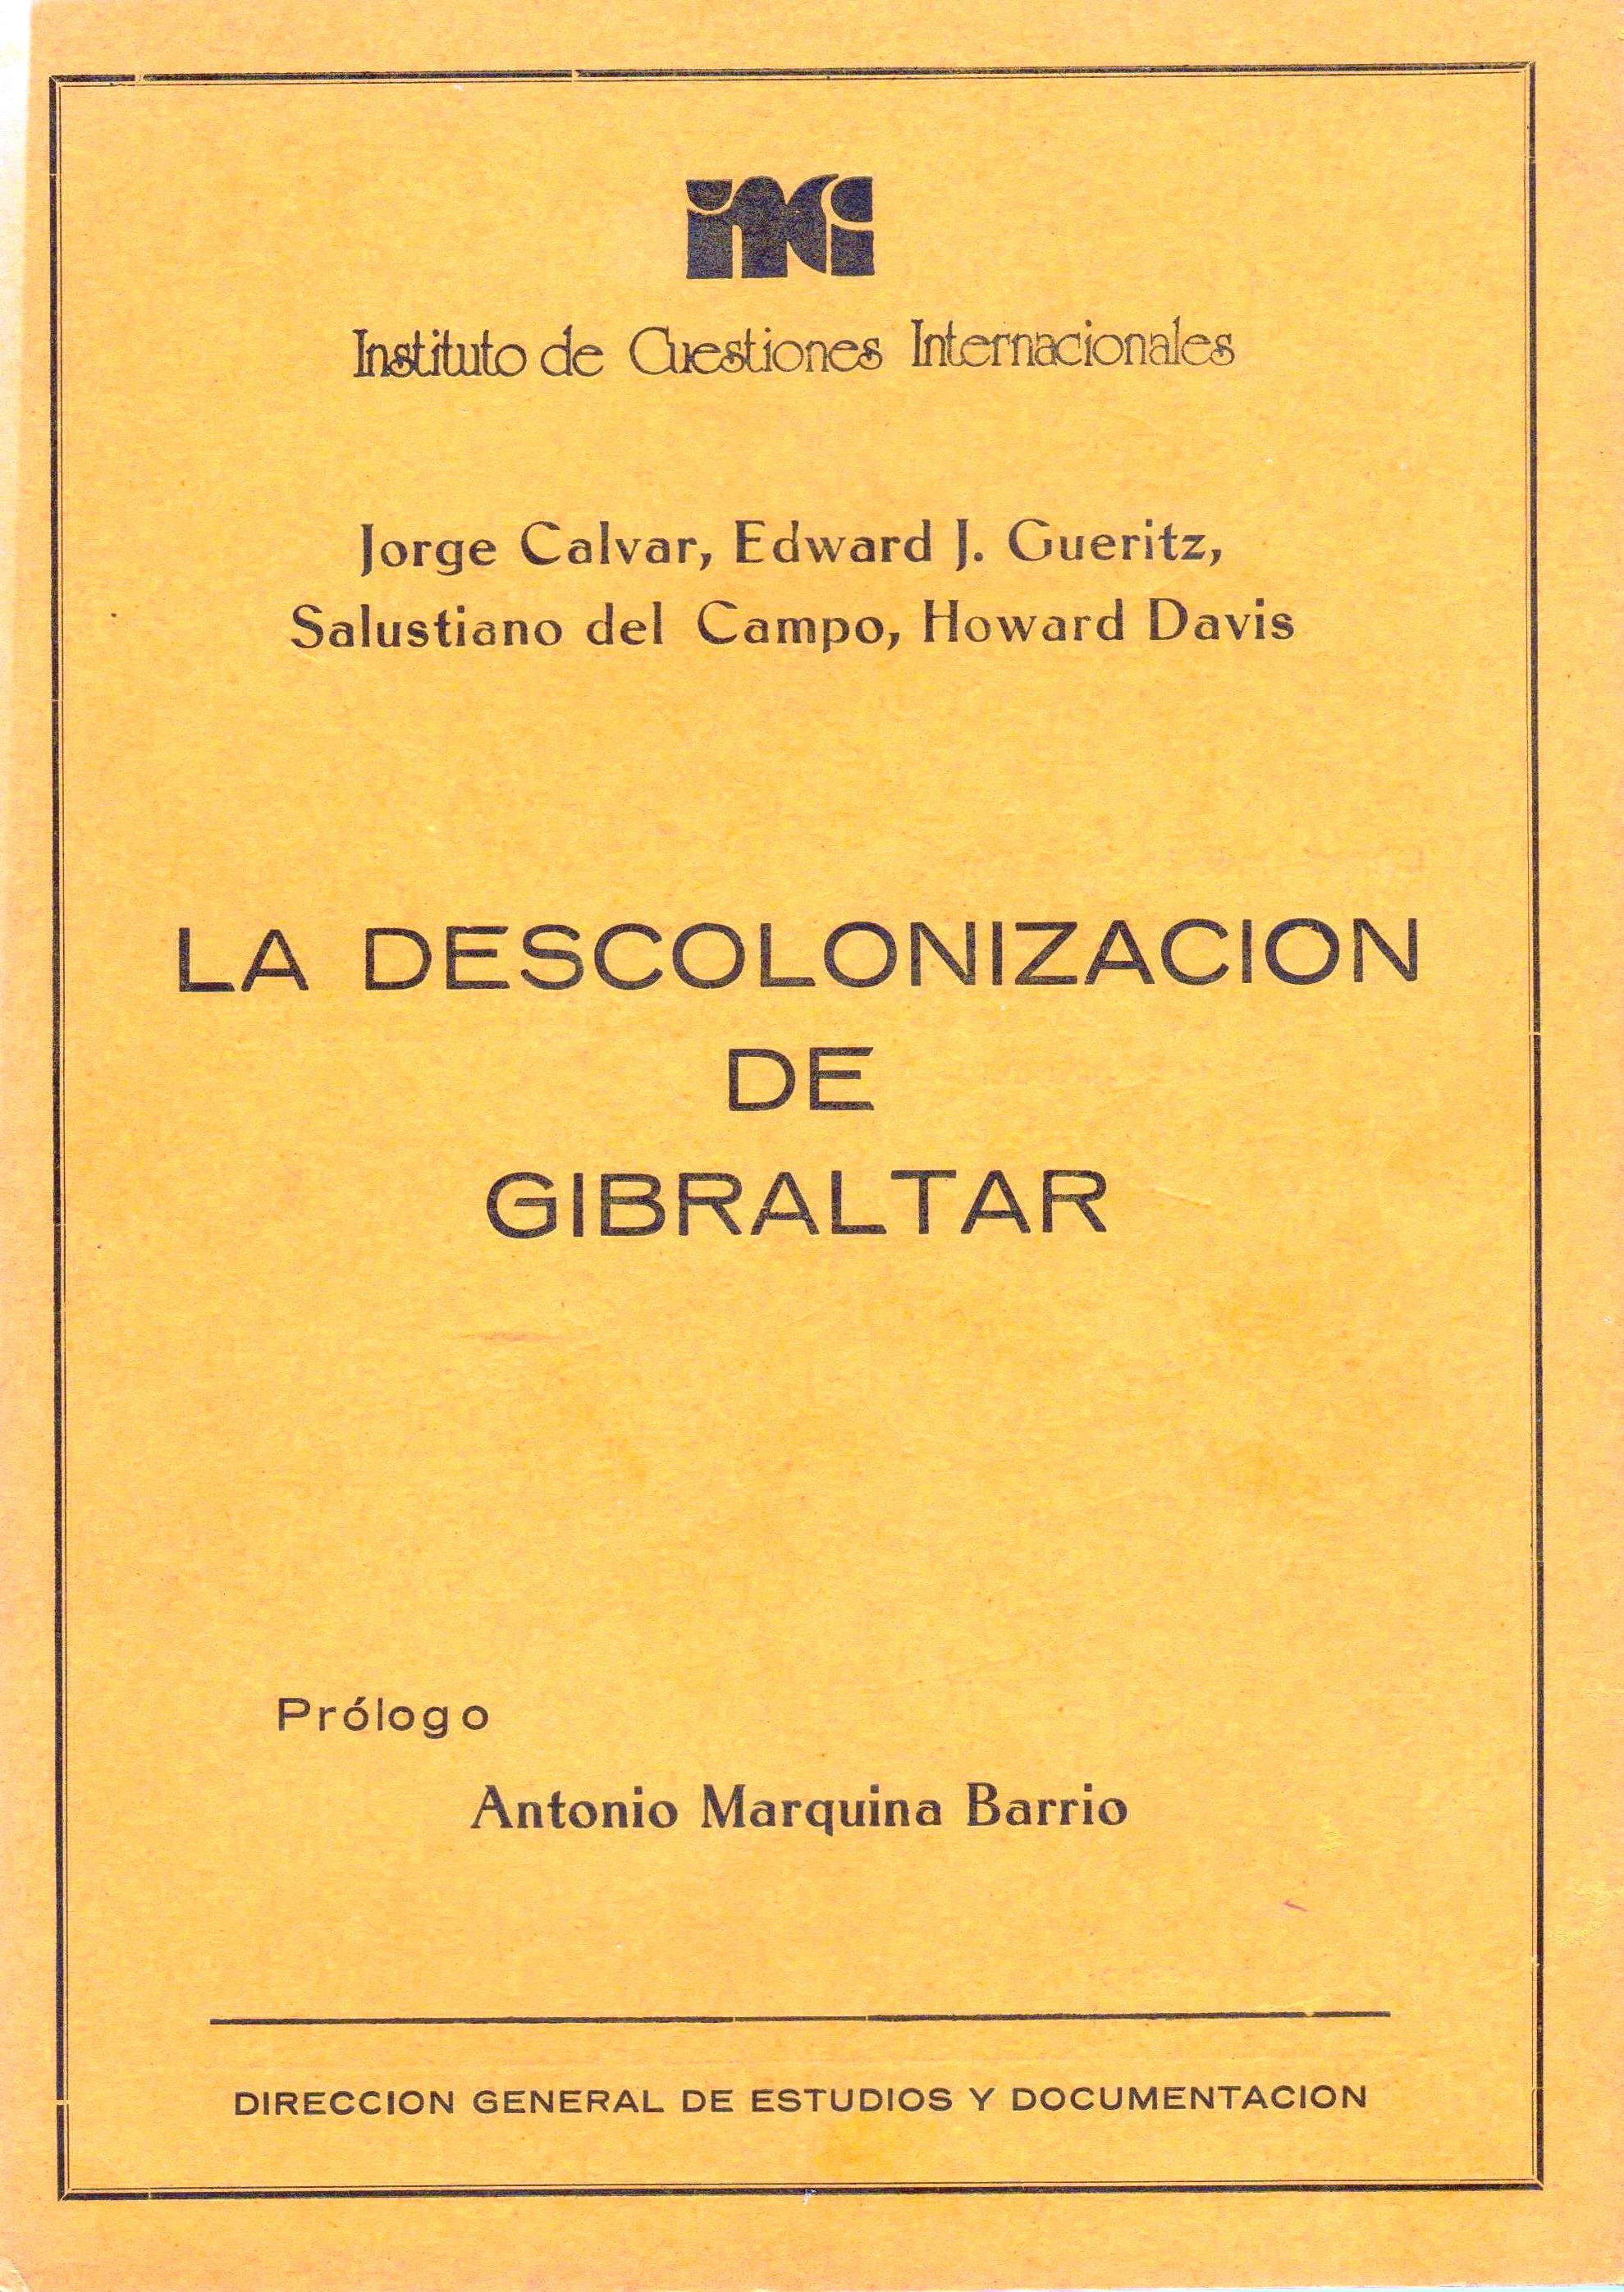 La descolonización de Gibraltar, de CALVAR, J. - GUERITZ, E. J. - DEL CAMPO, S. - DAVIS, H., Ed. Instituto de Cuestiones Internacionales, 1981, 110 páginas